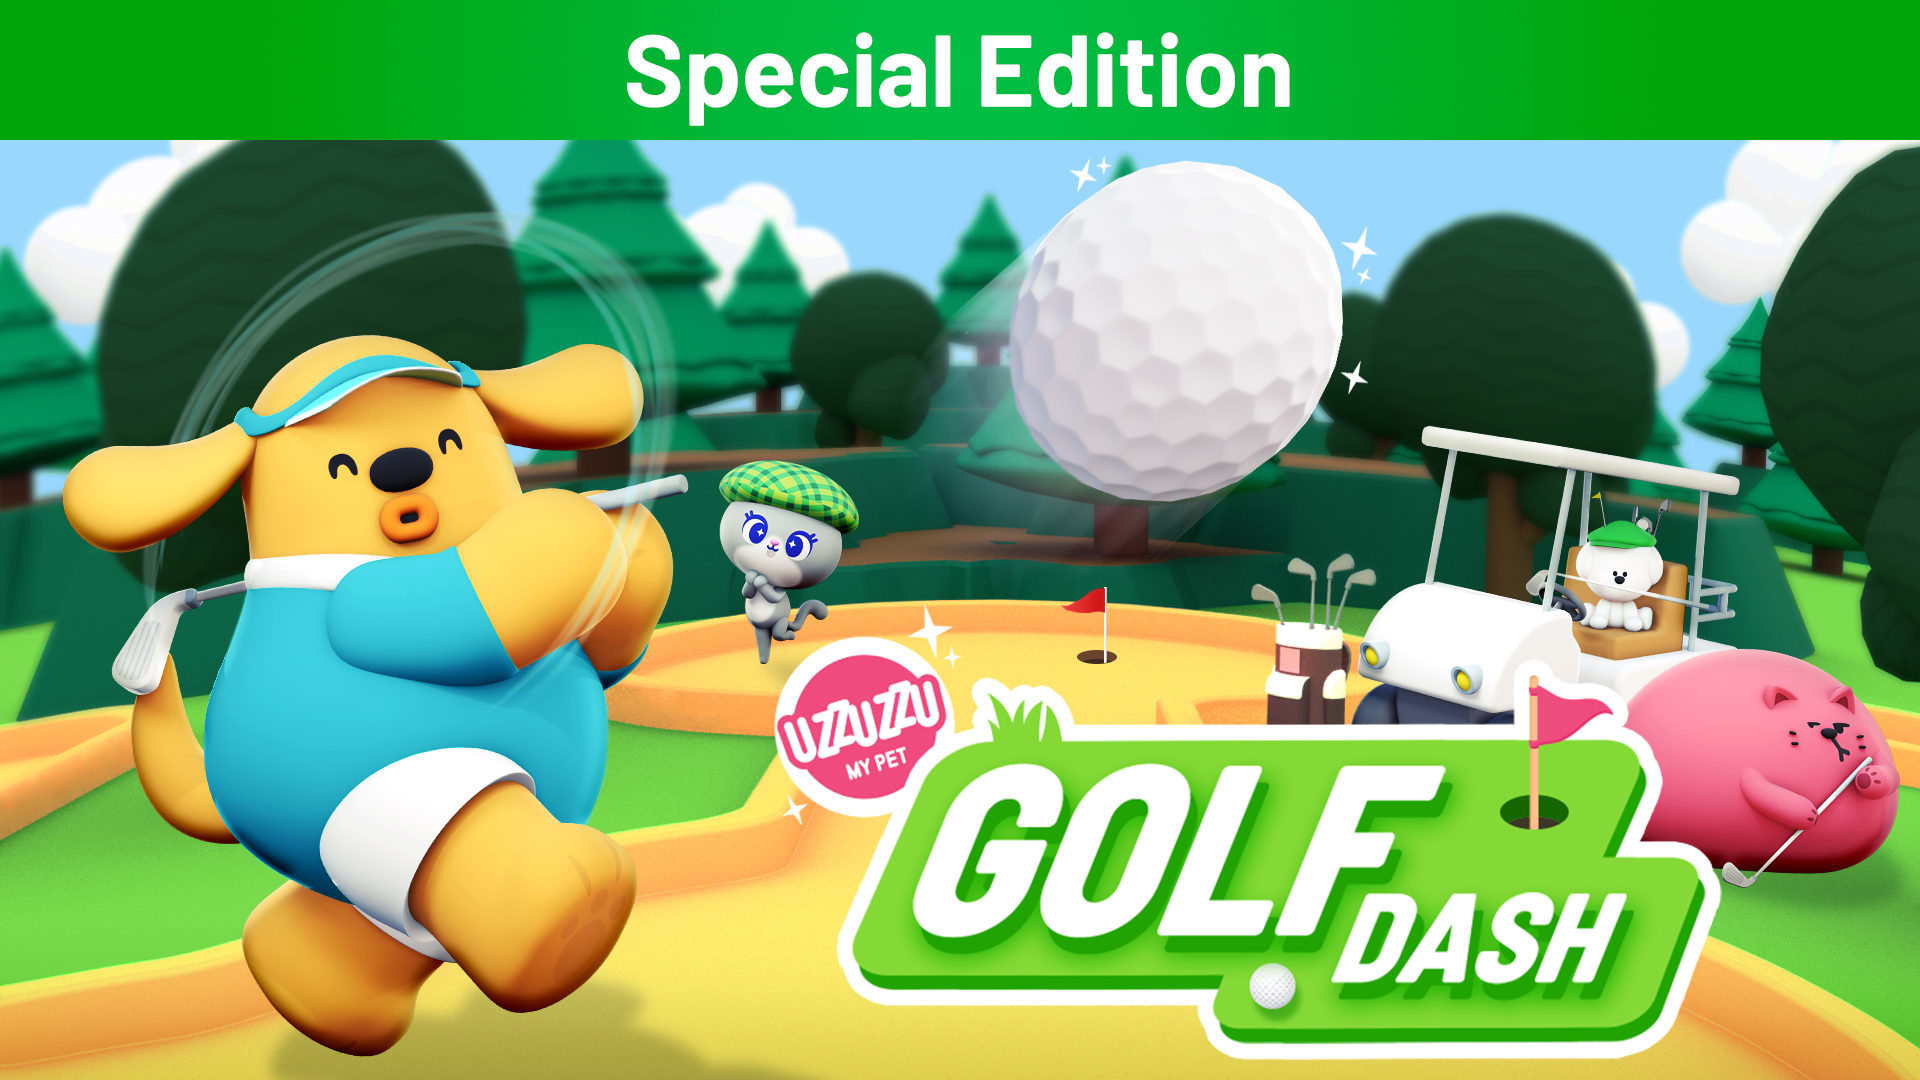 Uzzuzzu My Pet - Golf Dash Special Edition 1